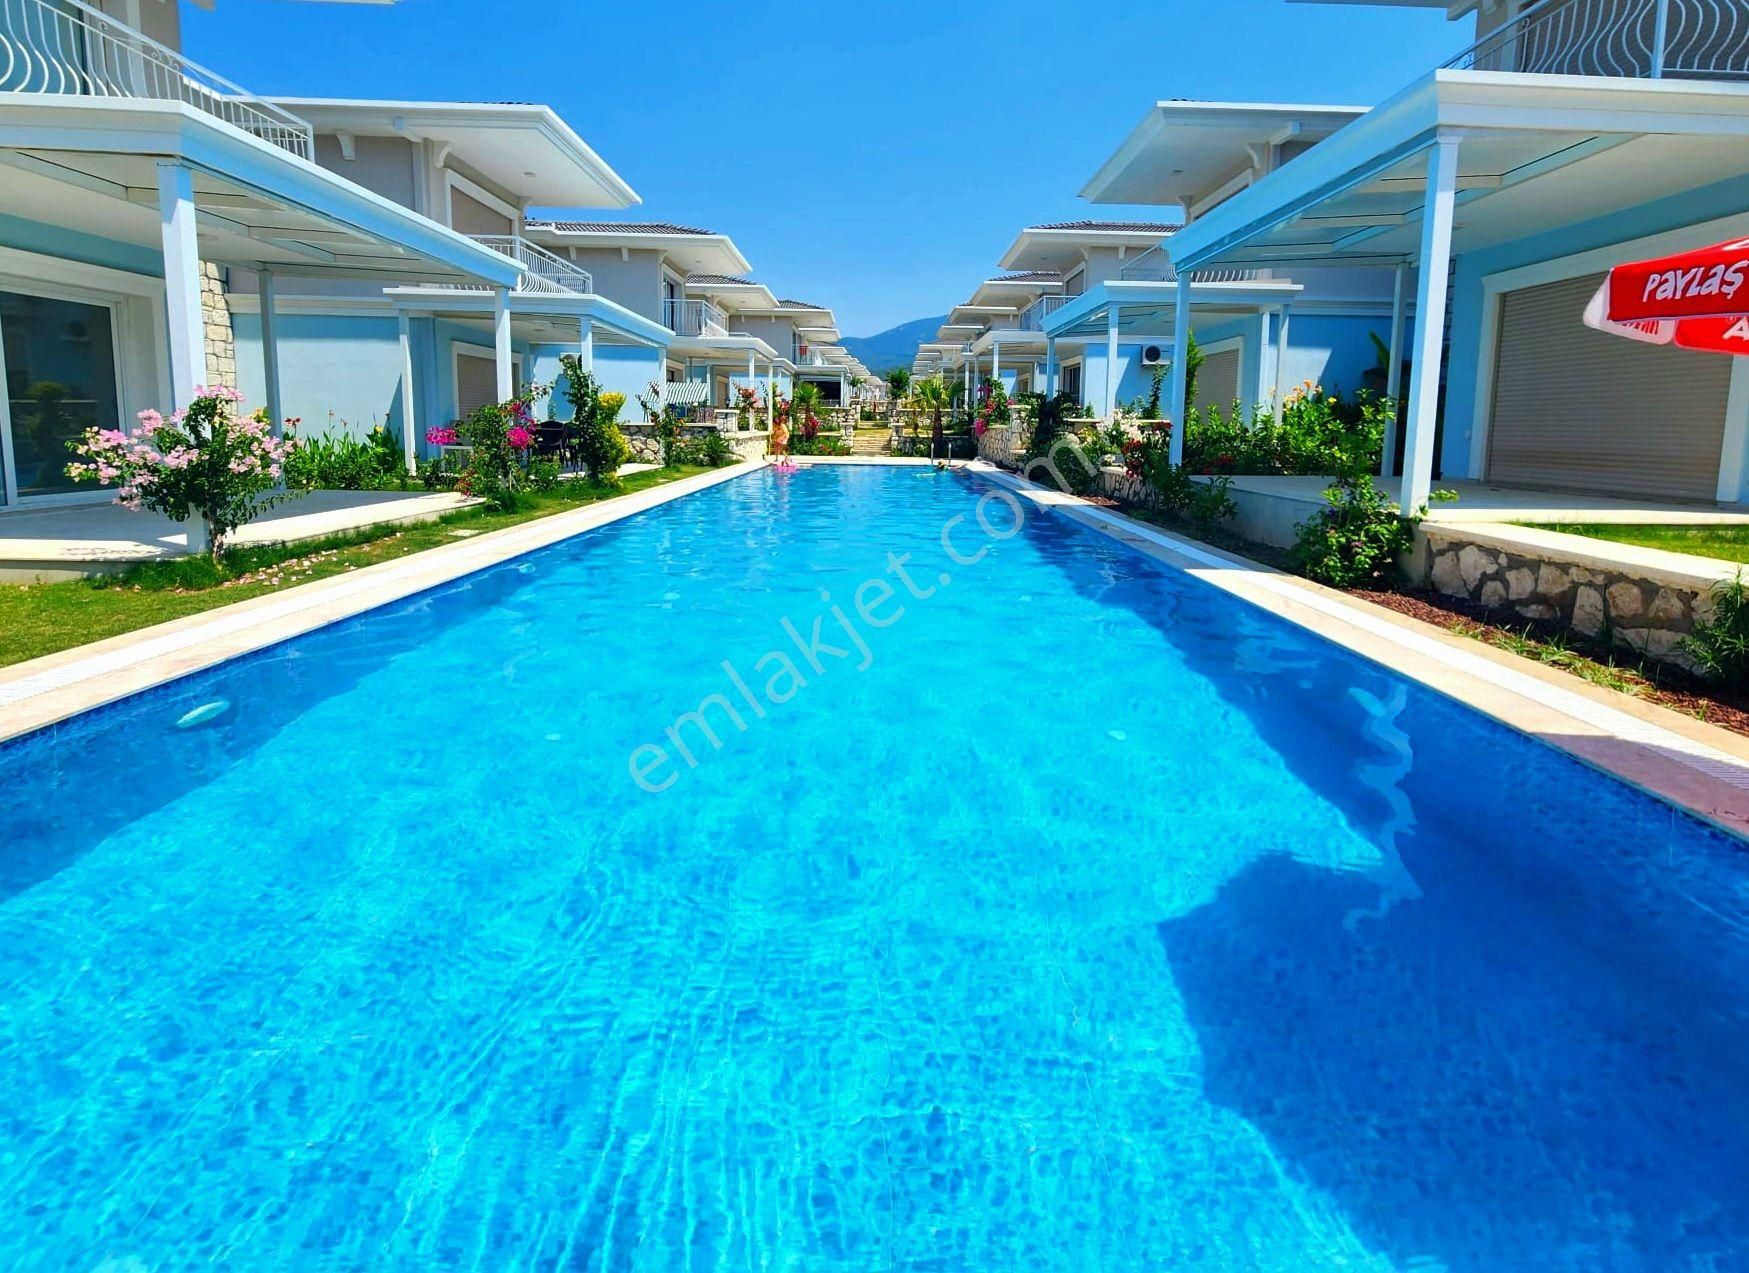 Kuşadası Güzelçamlı Satılık Villa Kuşadası termal havuzlu sitede satılık villa